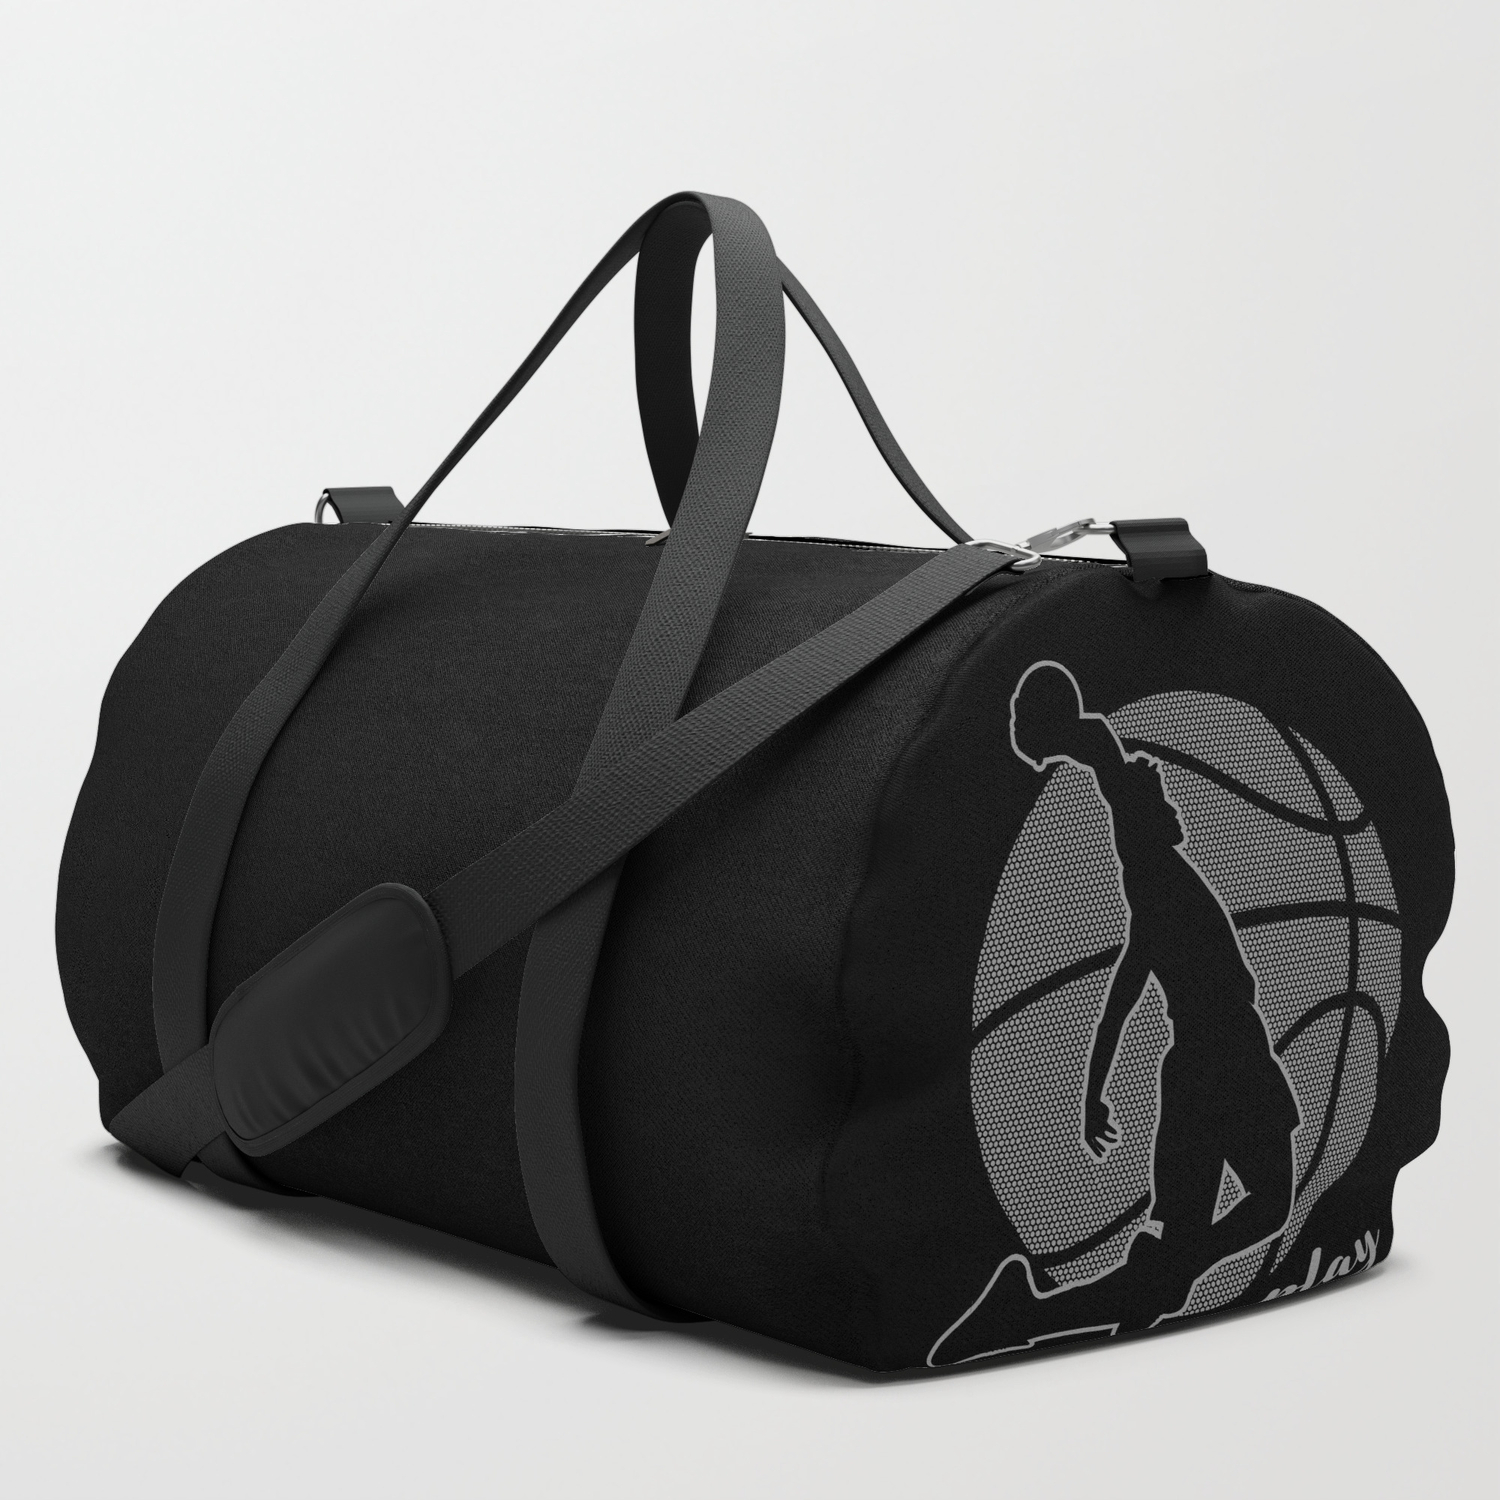 basketball player bags